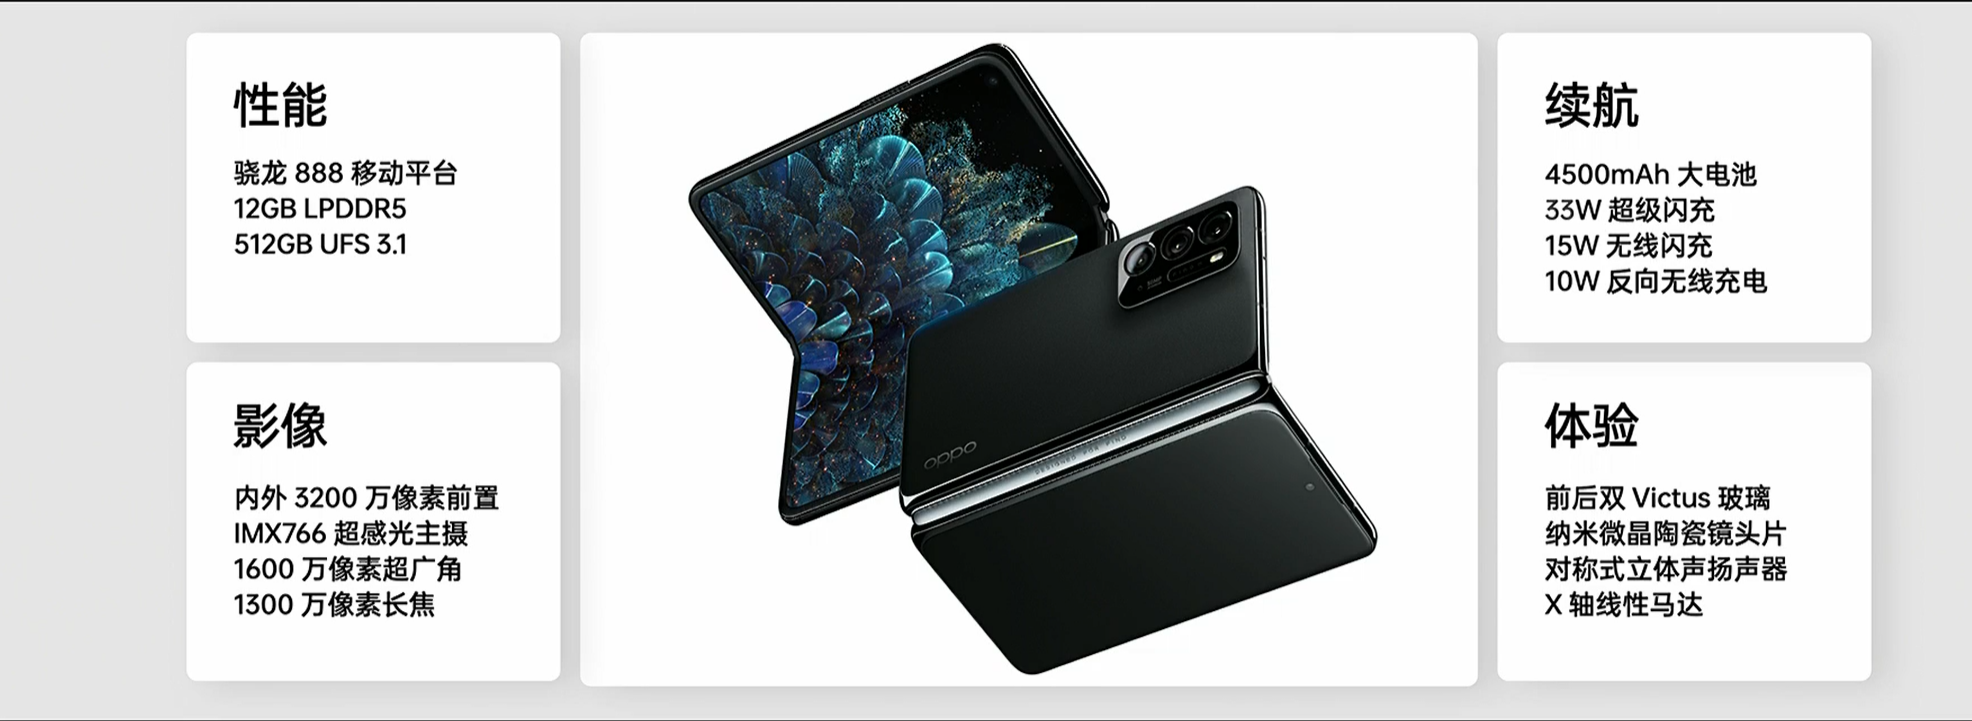 OPPO新品详情:马里亚纳X芯片、Air Glass、Find N折叠屏手机